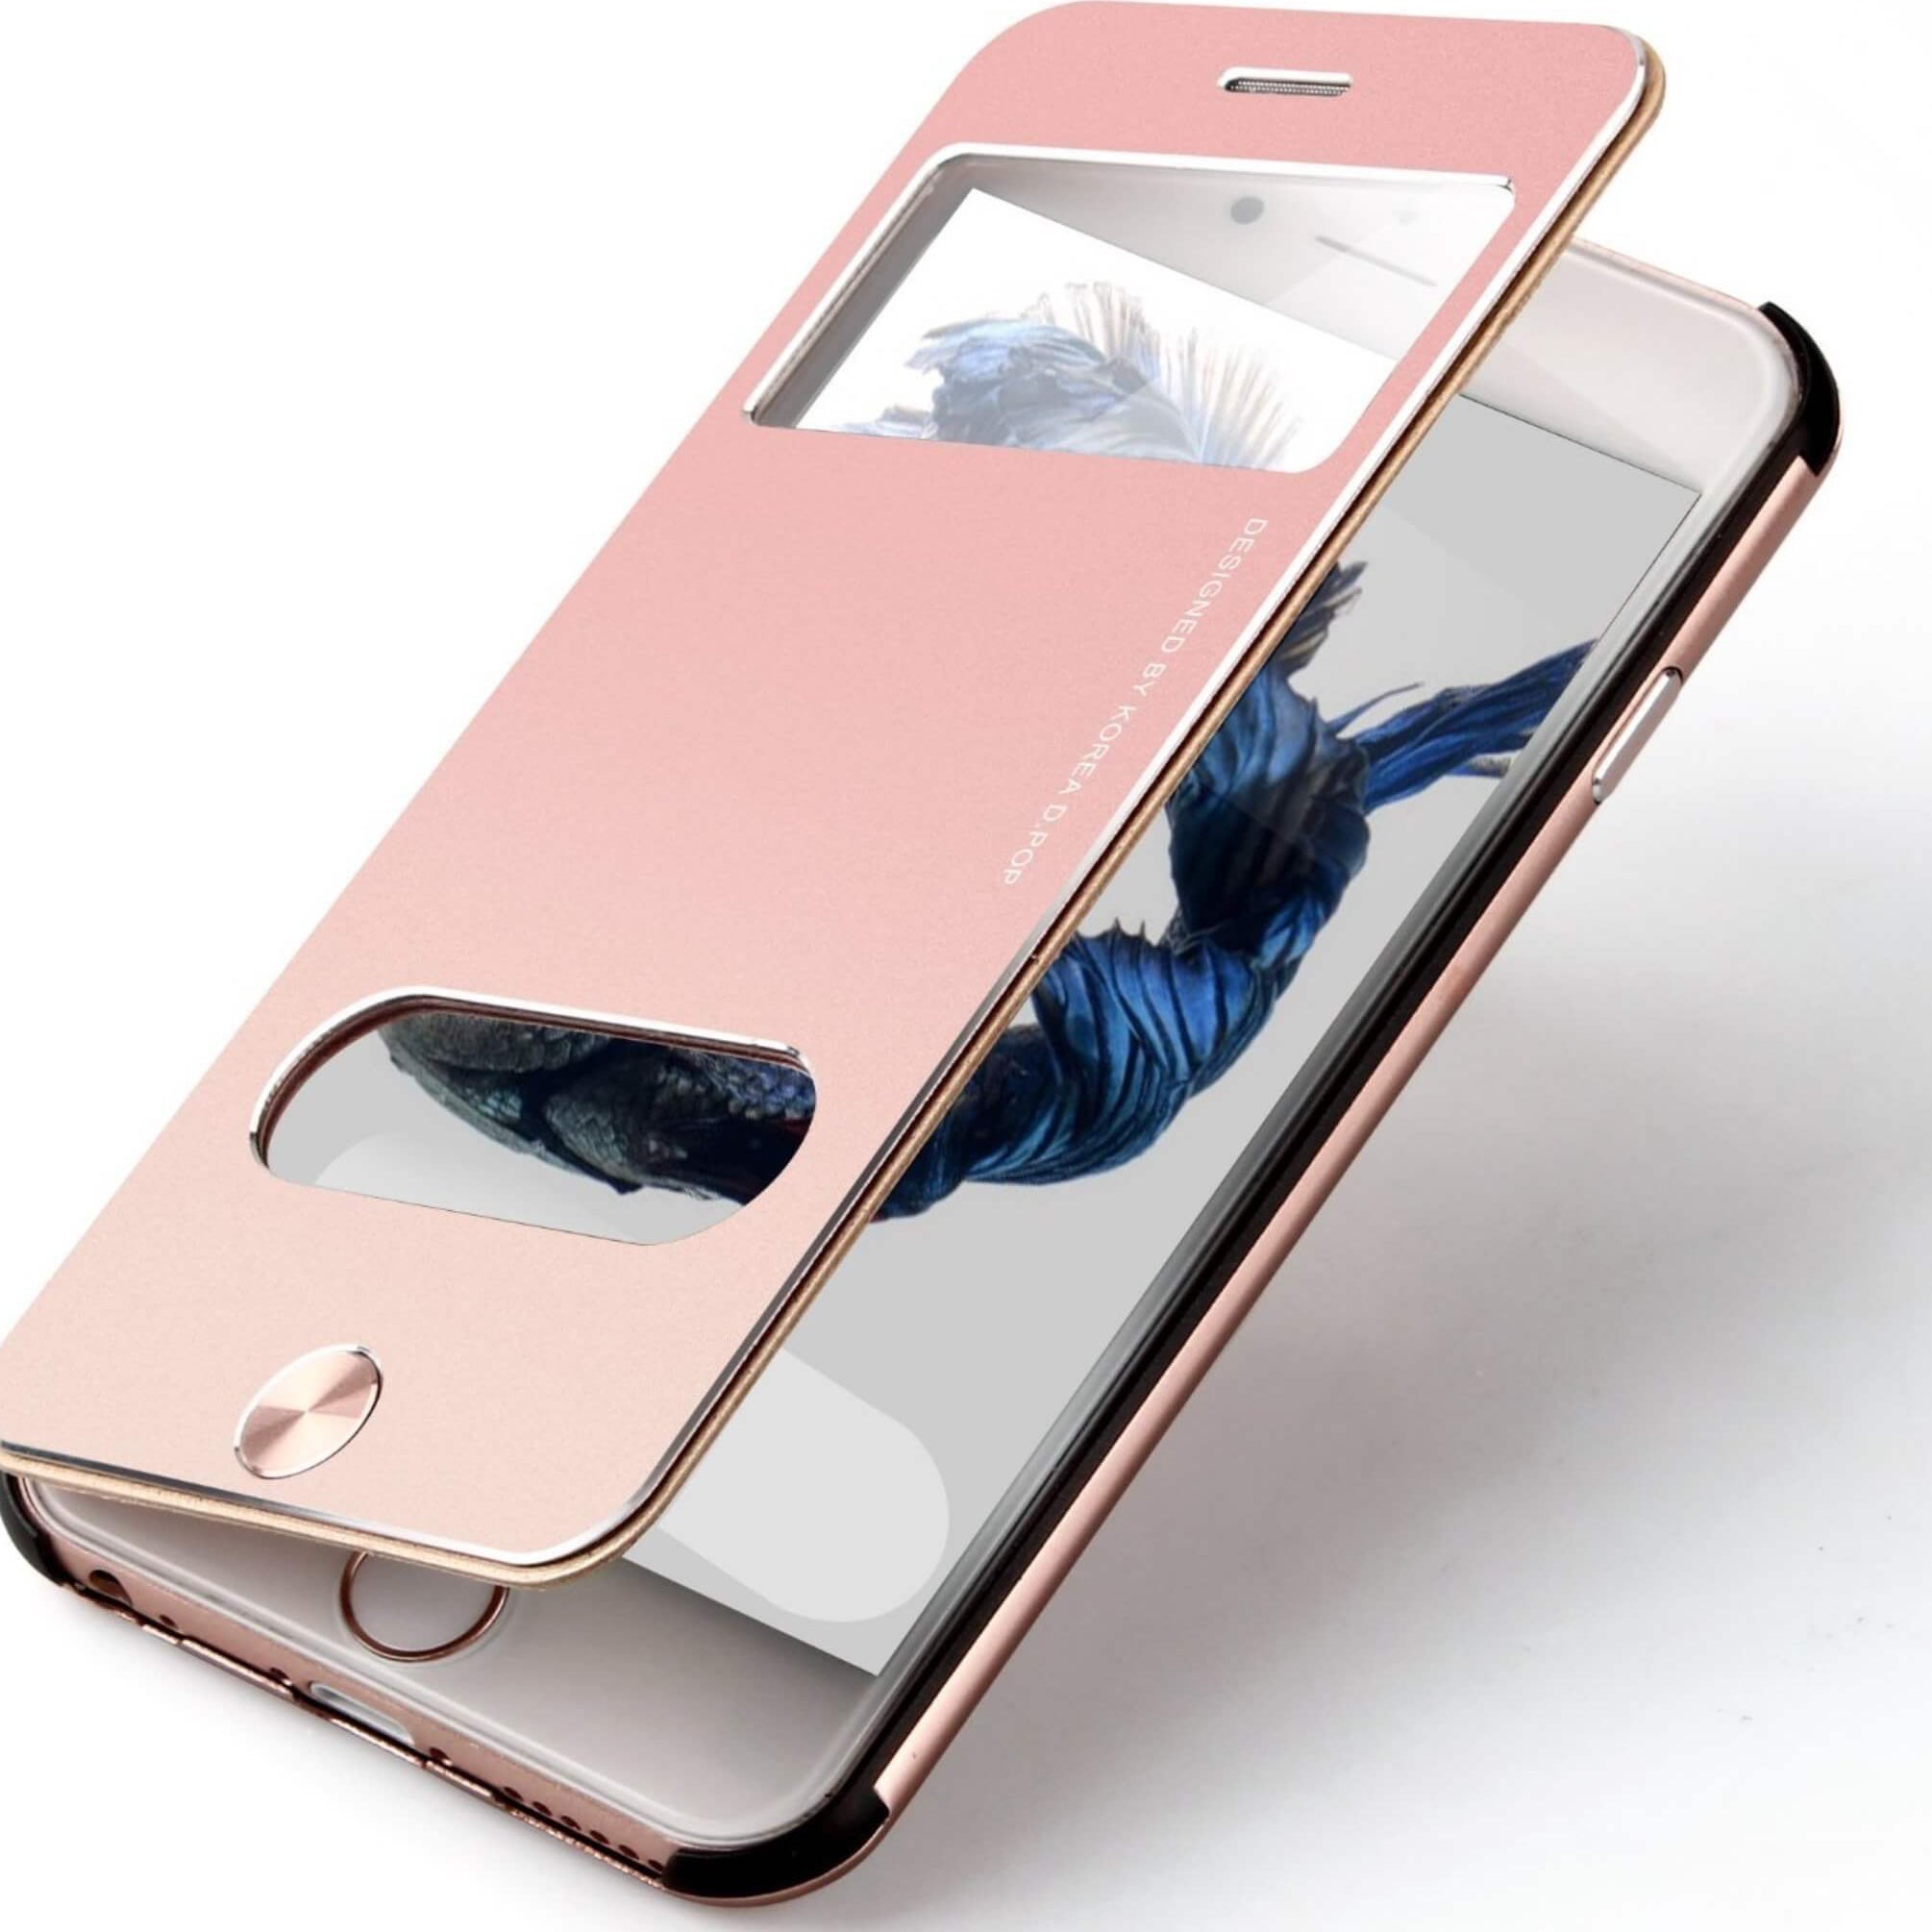 Handyhülle für iPhone aus Aluminium Rose / iPhone 6/6s